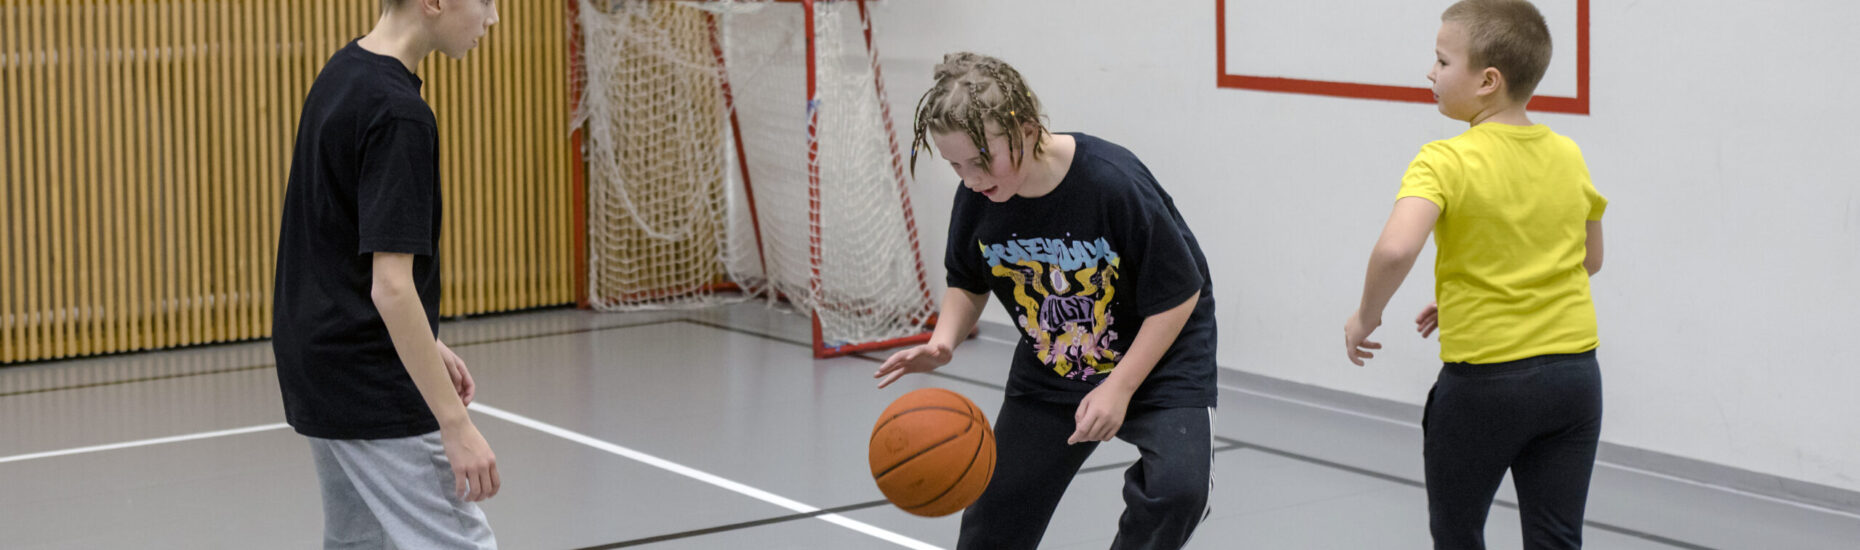 Kolme viidesluokkalaista poikaa pelaamassa koripalloa liikuntasalissa.